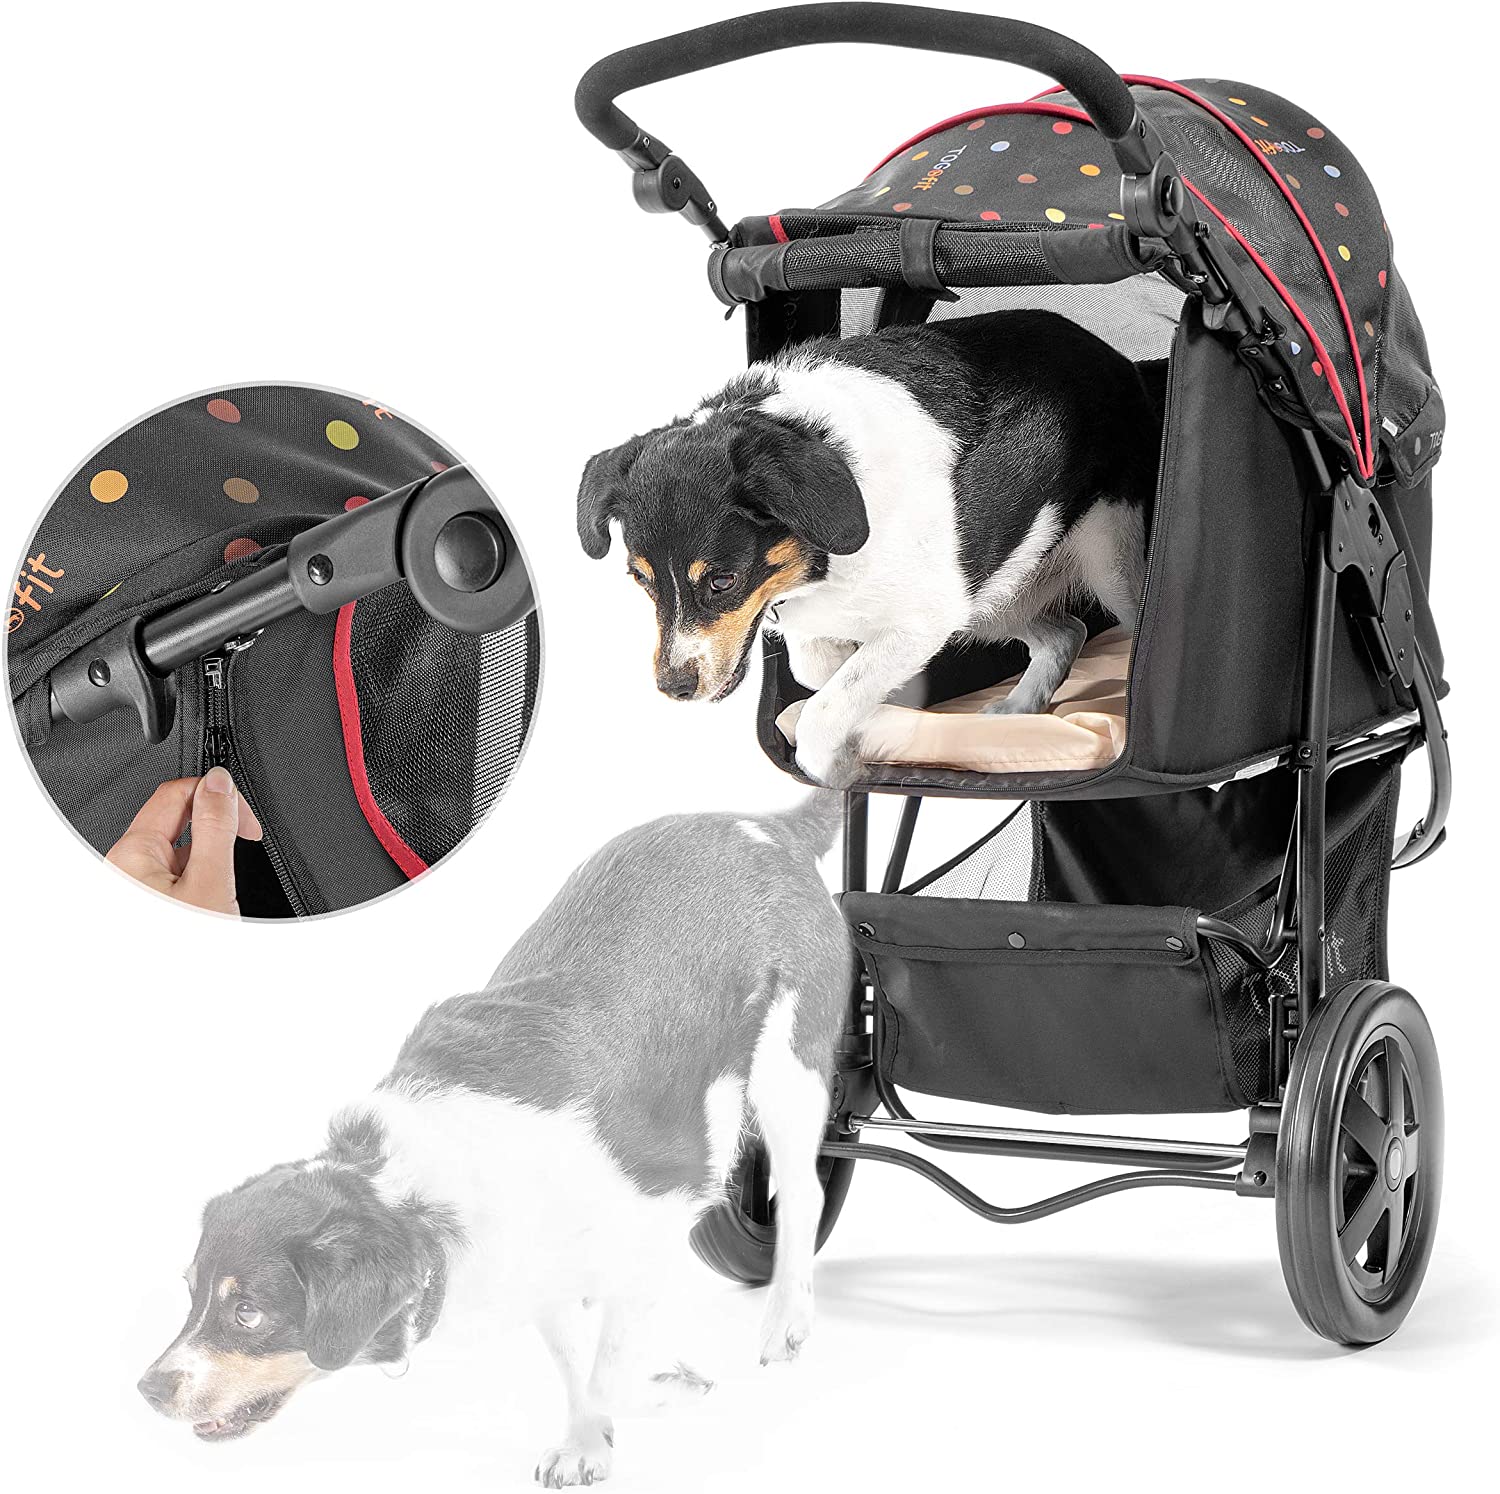  TOGfit Pet Roadster - Lujoso carrito para perros y mascotas hasta 32 kg, Ruedas grandes, altura regulable, incl. colchón, pequeño y plegable, color negro con puntitos 